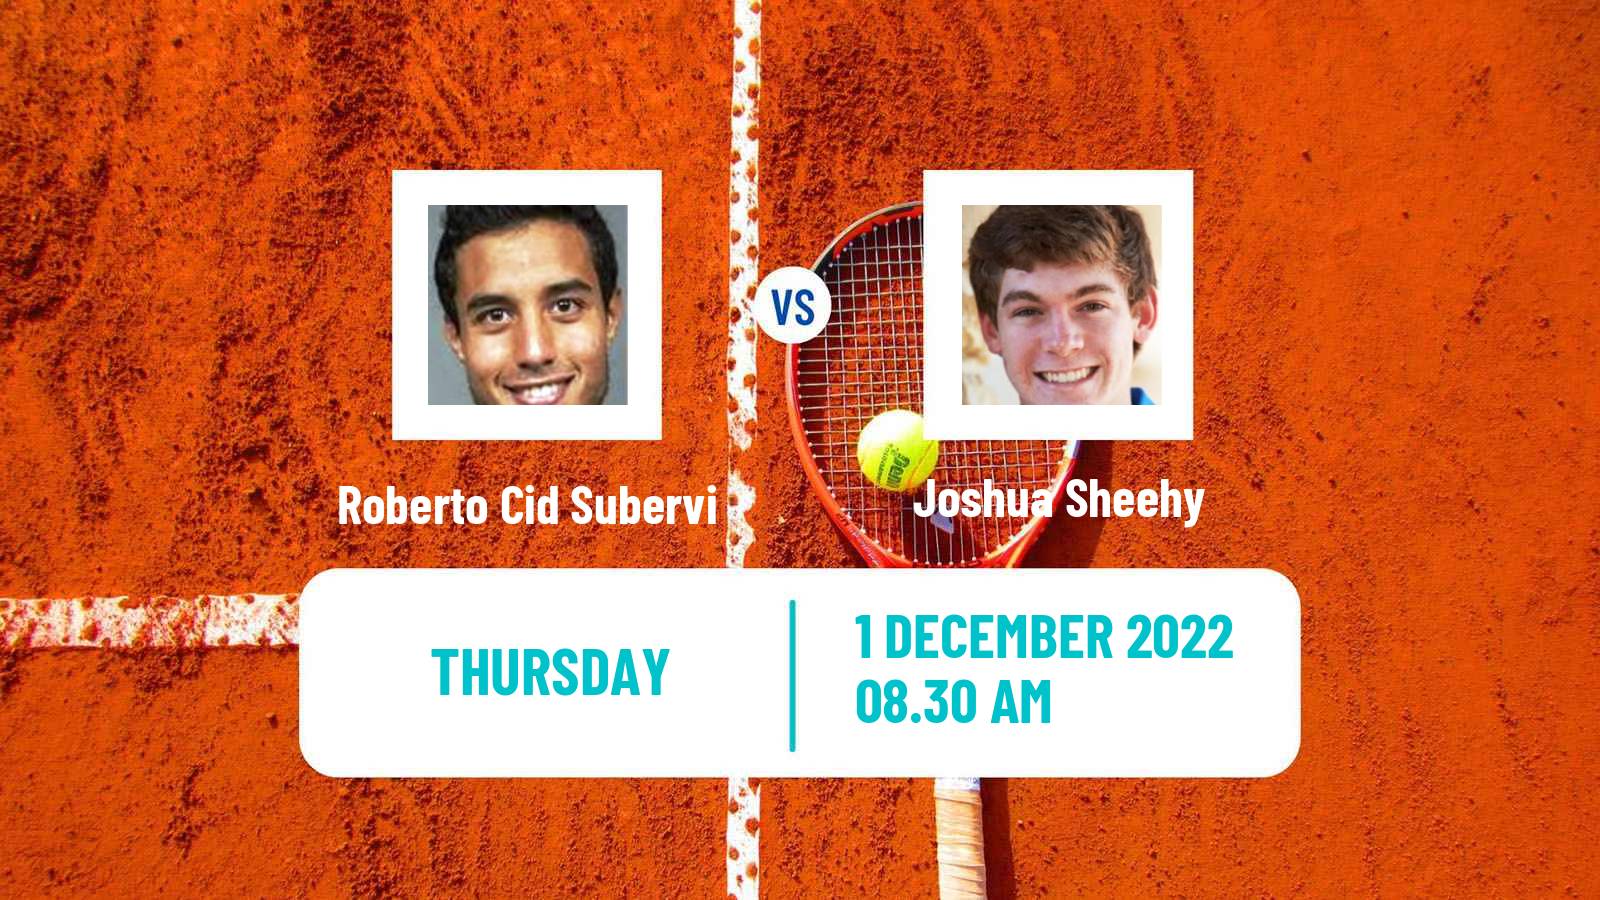 Tennis ITF Tournaments Roberto Cid Subervi - Joshua Sheehy